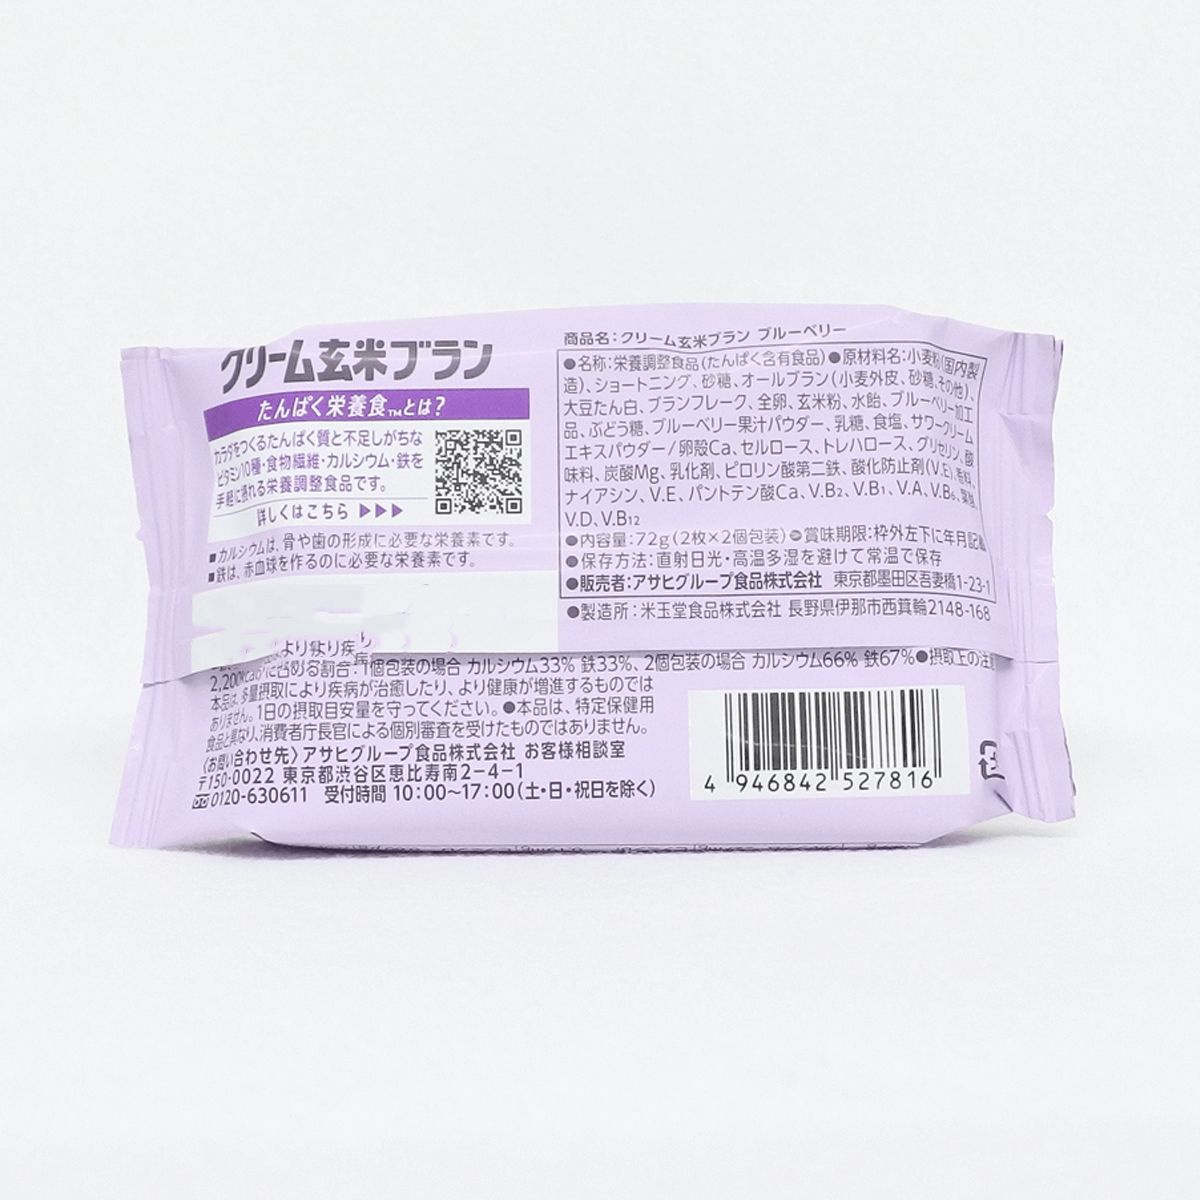 Asahi 朝日 玄米夾心餅乾(藍莓) 2片×2袋